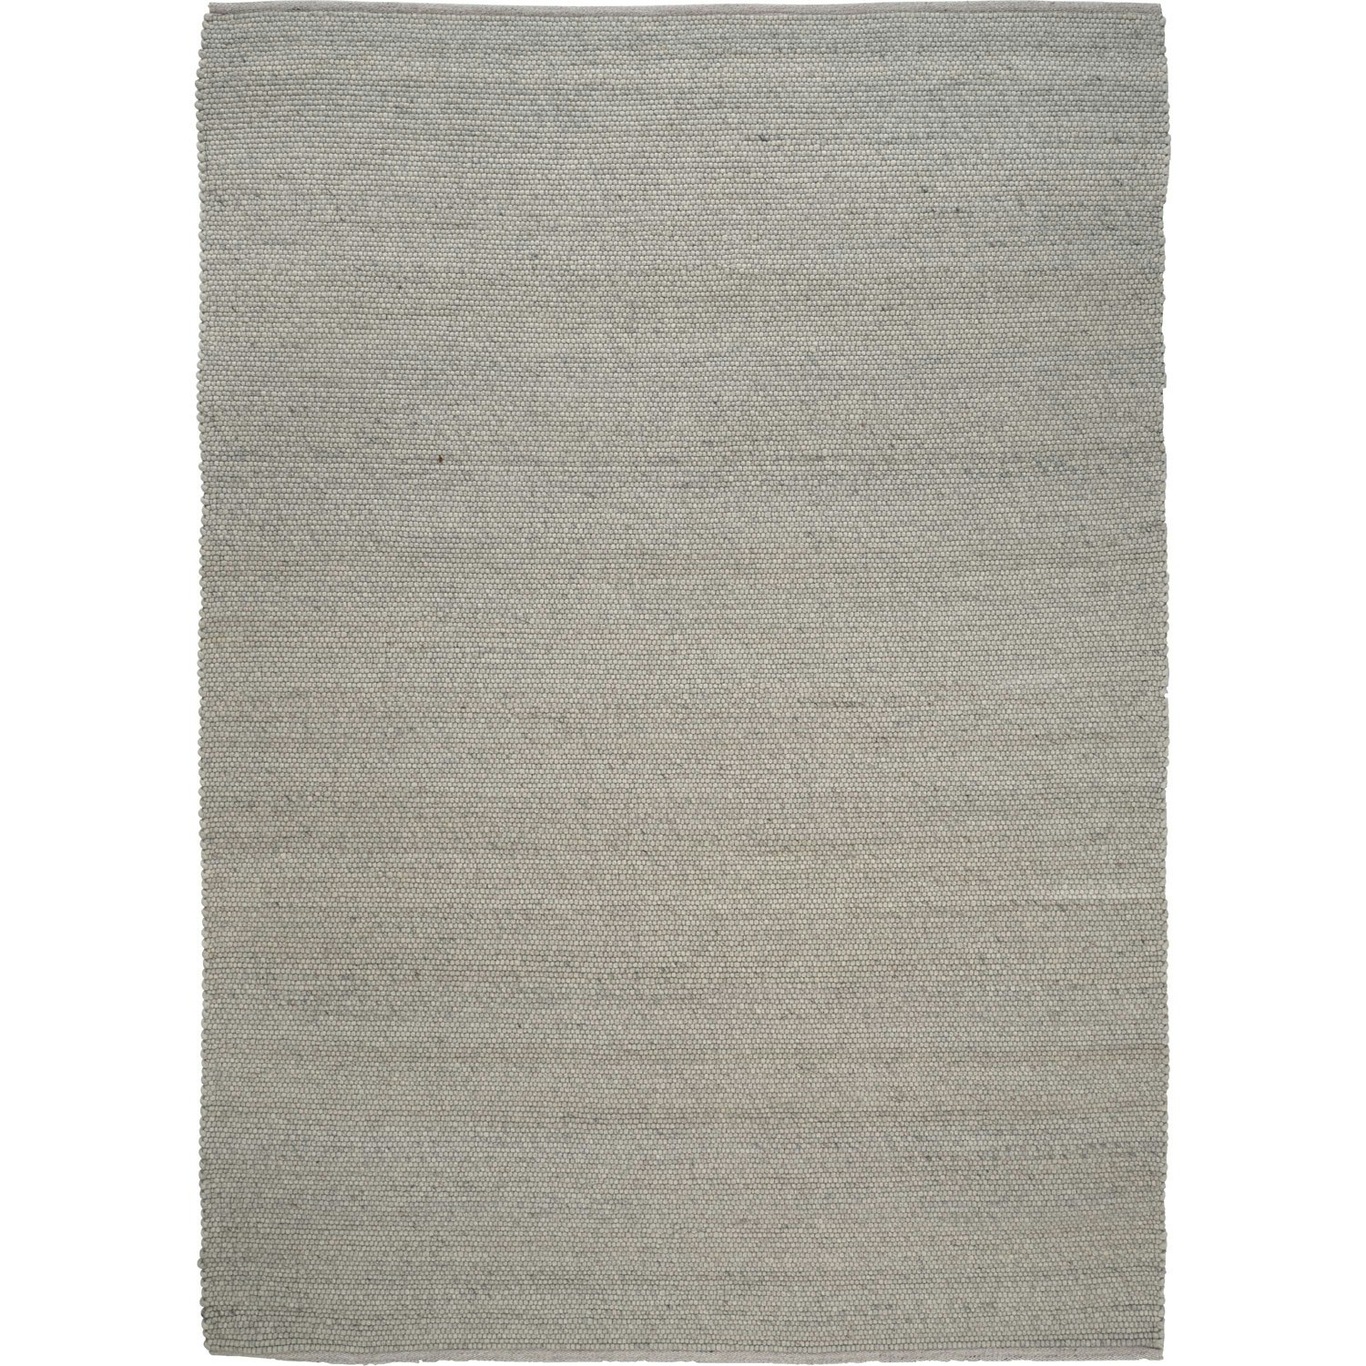 Merino Matto 300x400 cm, Concrete